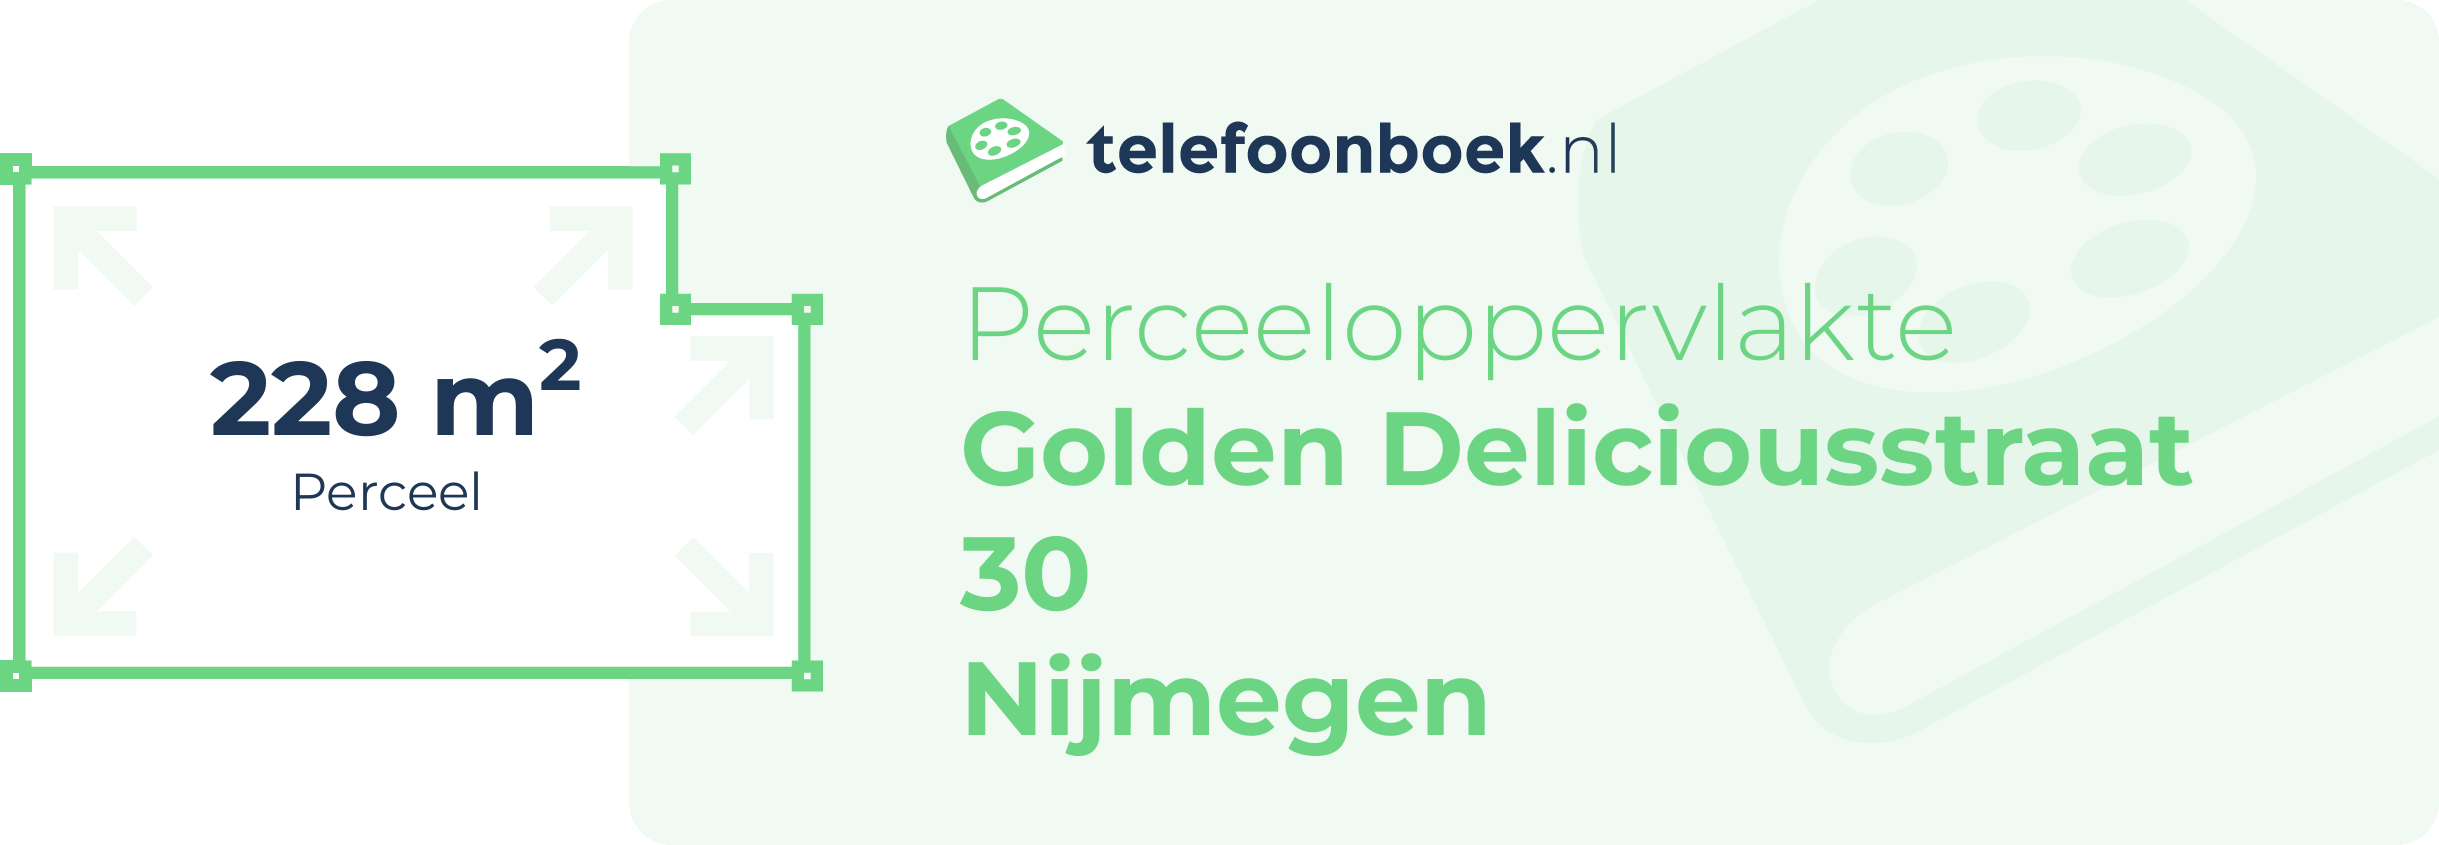 Perceeloppervlakte Golden Deliciousstraat 30 Nijmegen